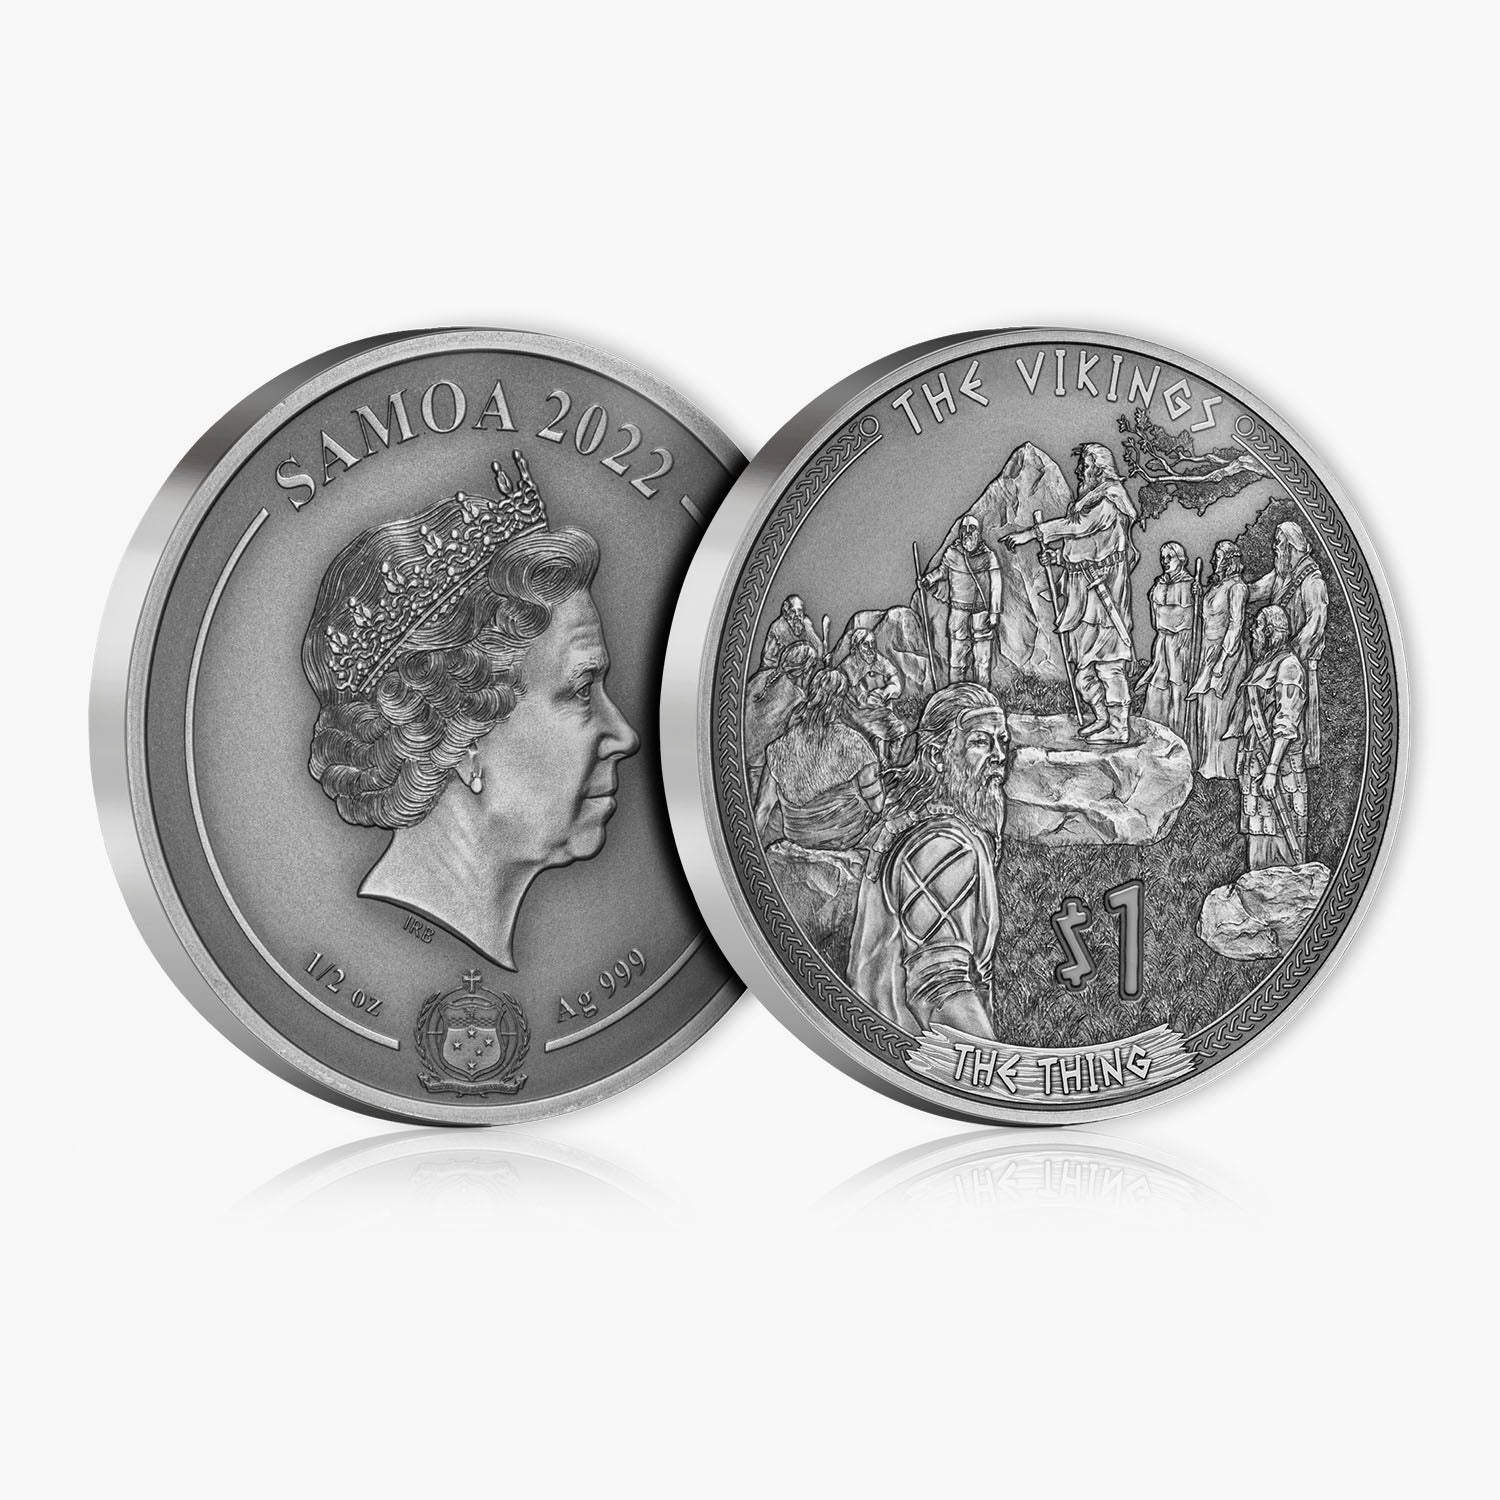 ヨルダン 1977年50フィルス硬貨 古銭 コイン 外国貨幣 通貨 同梱対応 